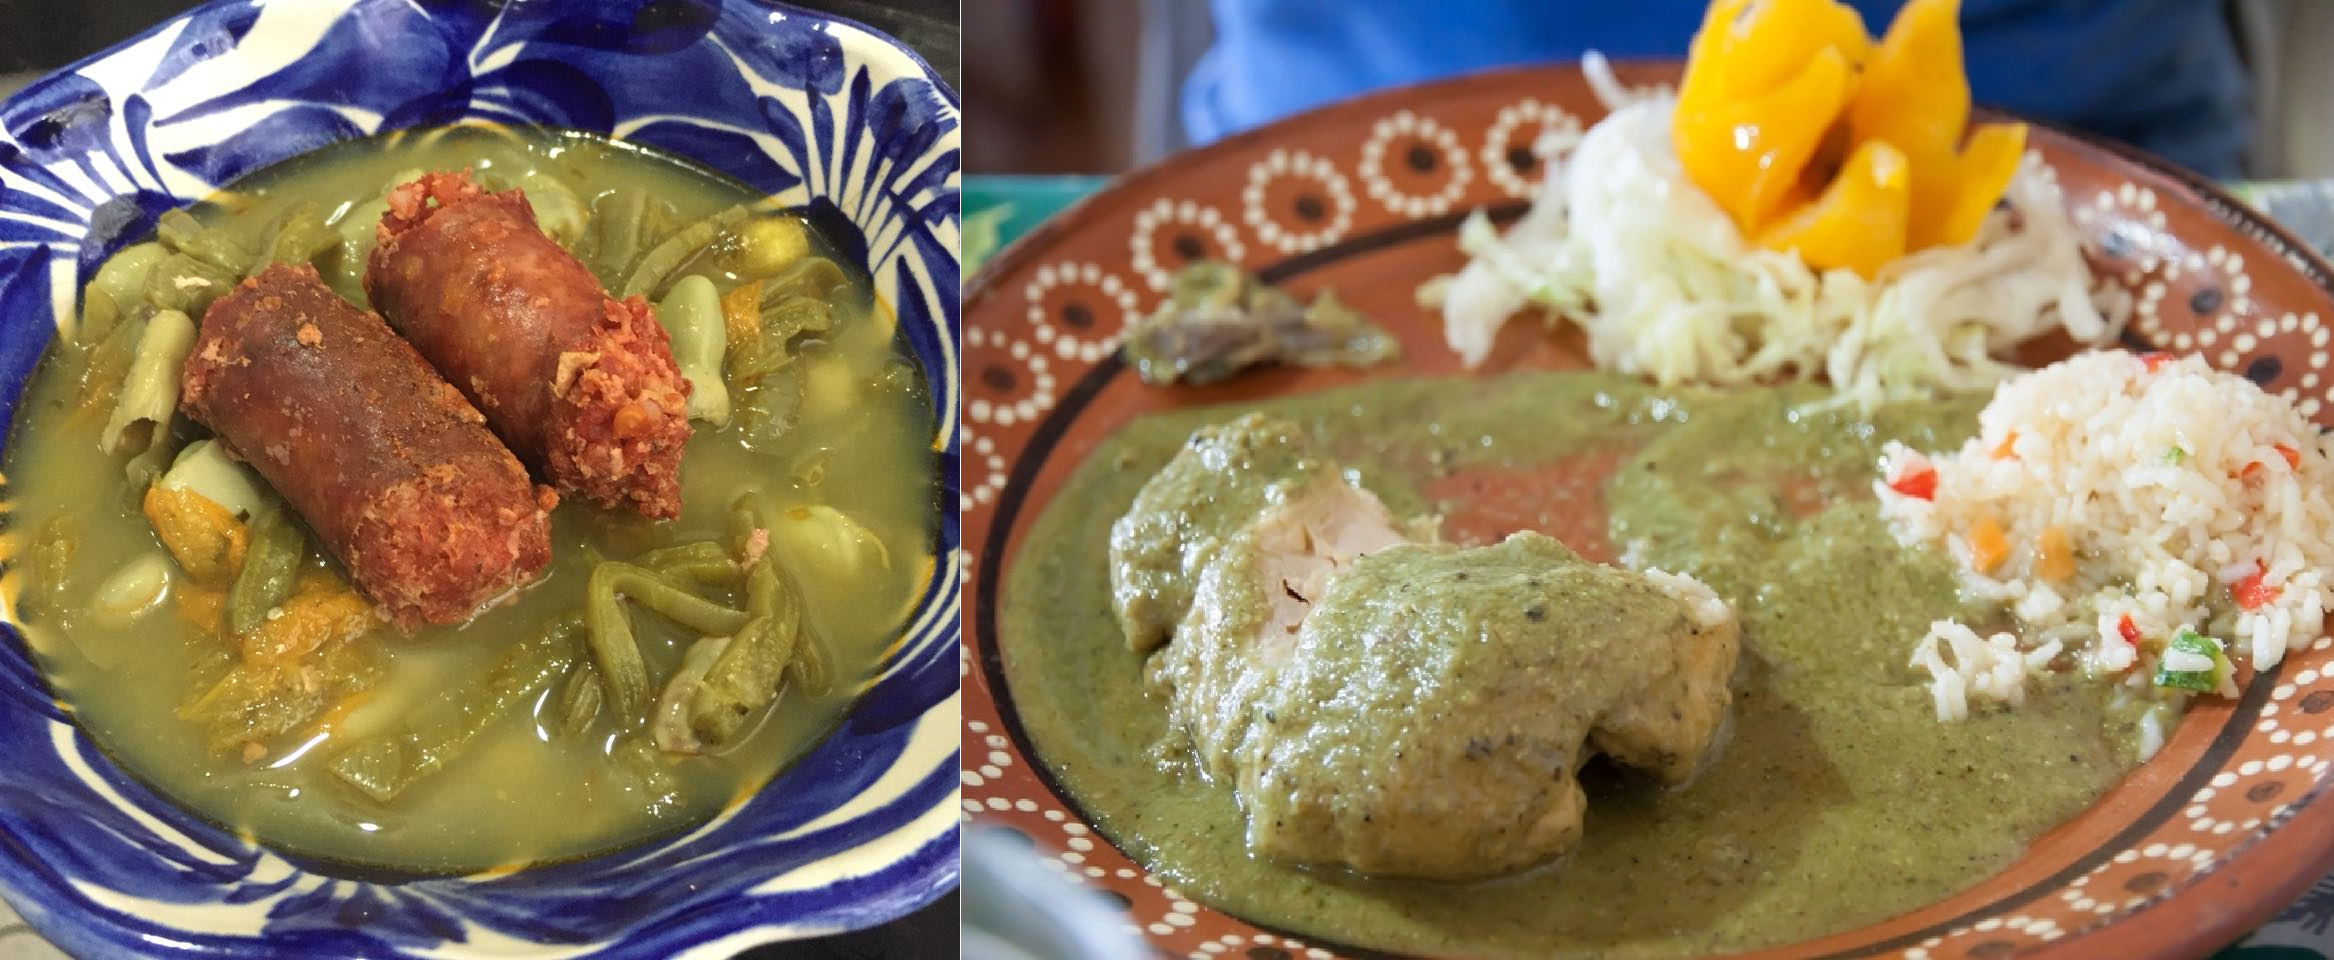 ¿Cuál es la comida típica del Valle de Toluca?